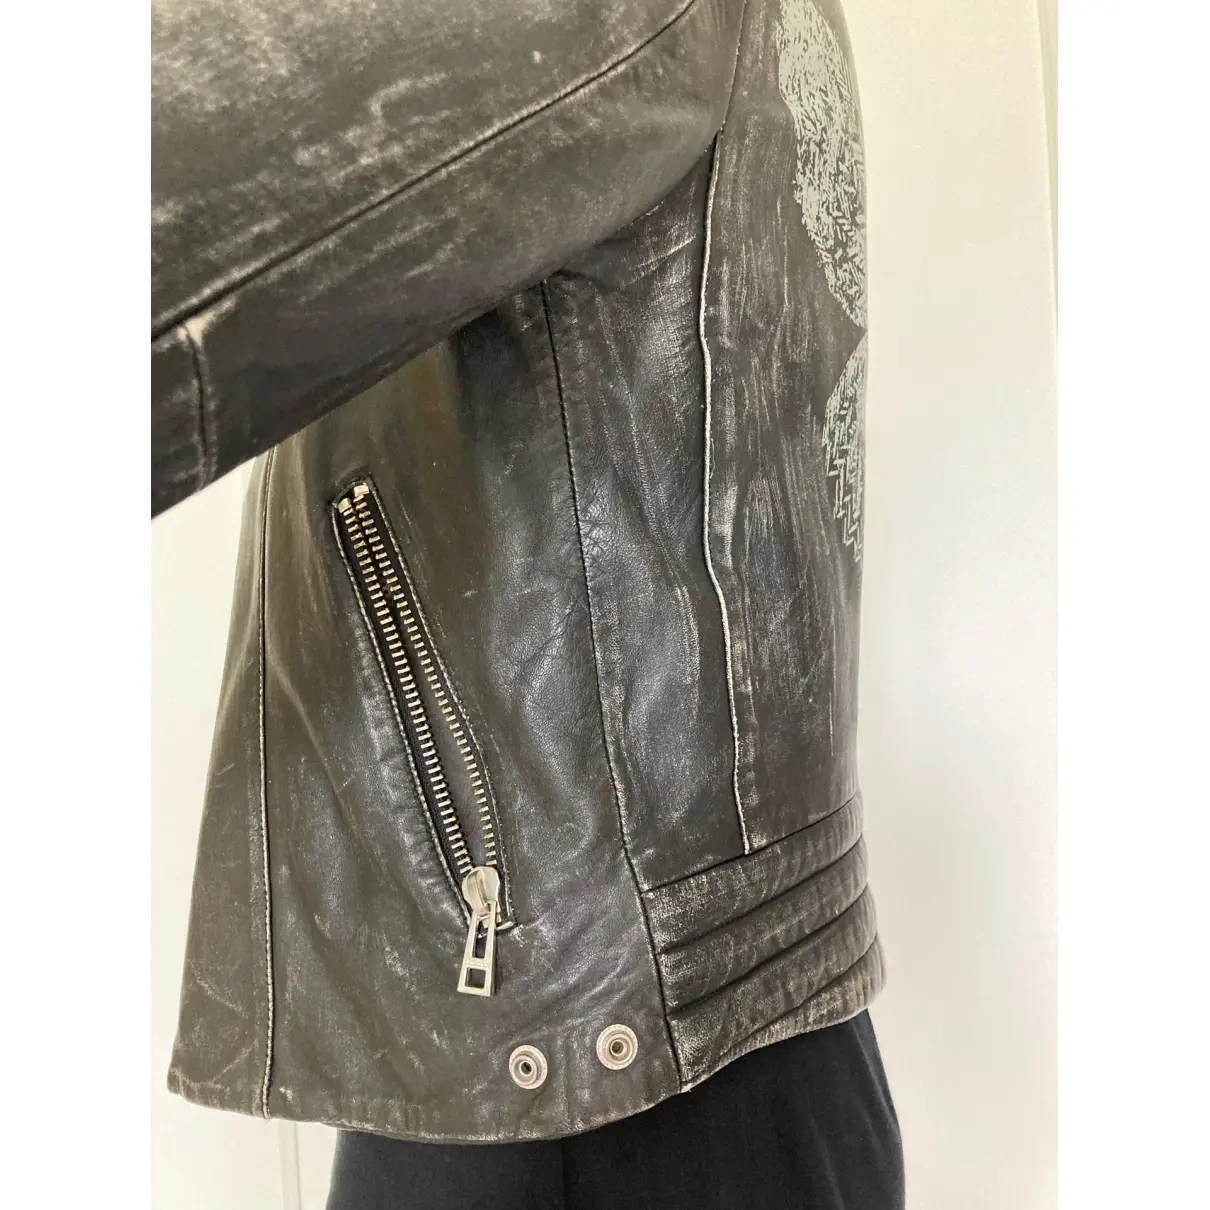 Leather biker jacket Zadig & Voltaire